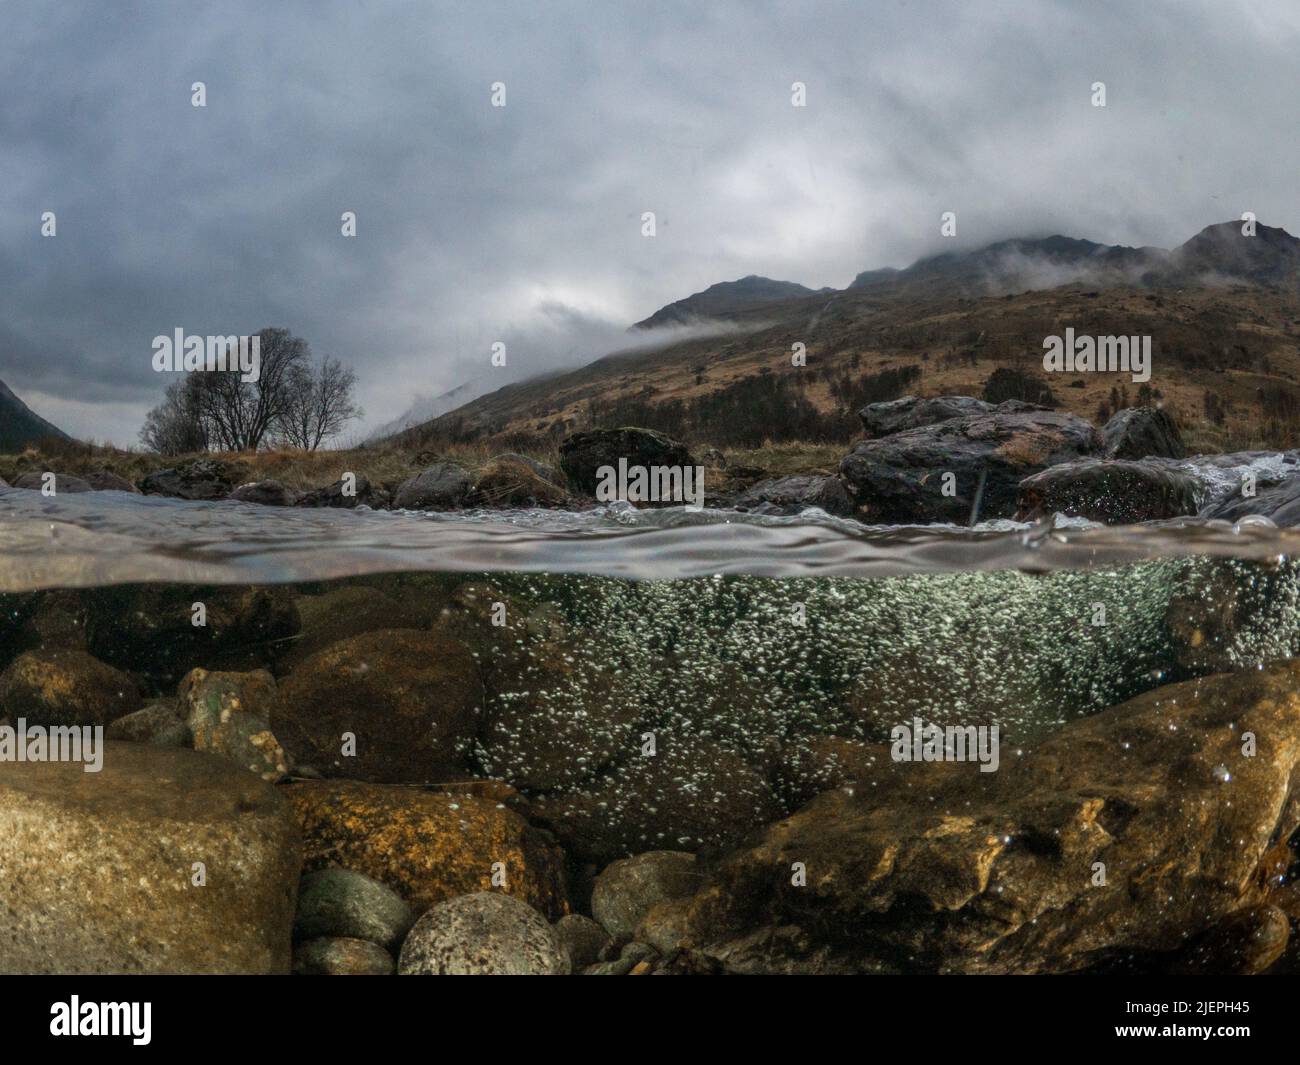 Das Wasser fließt aus den Felsen unter dem Fluss Kinglas. Hügel, Bäume und dunkle, stürmische Wolken stehen im Hintergrund. Stockfoto